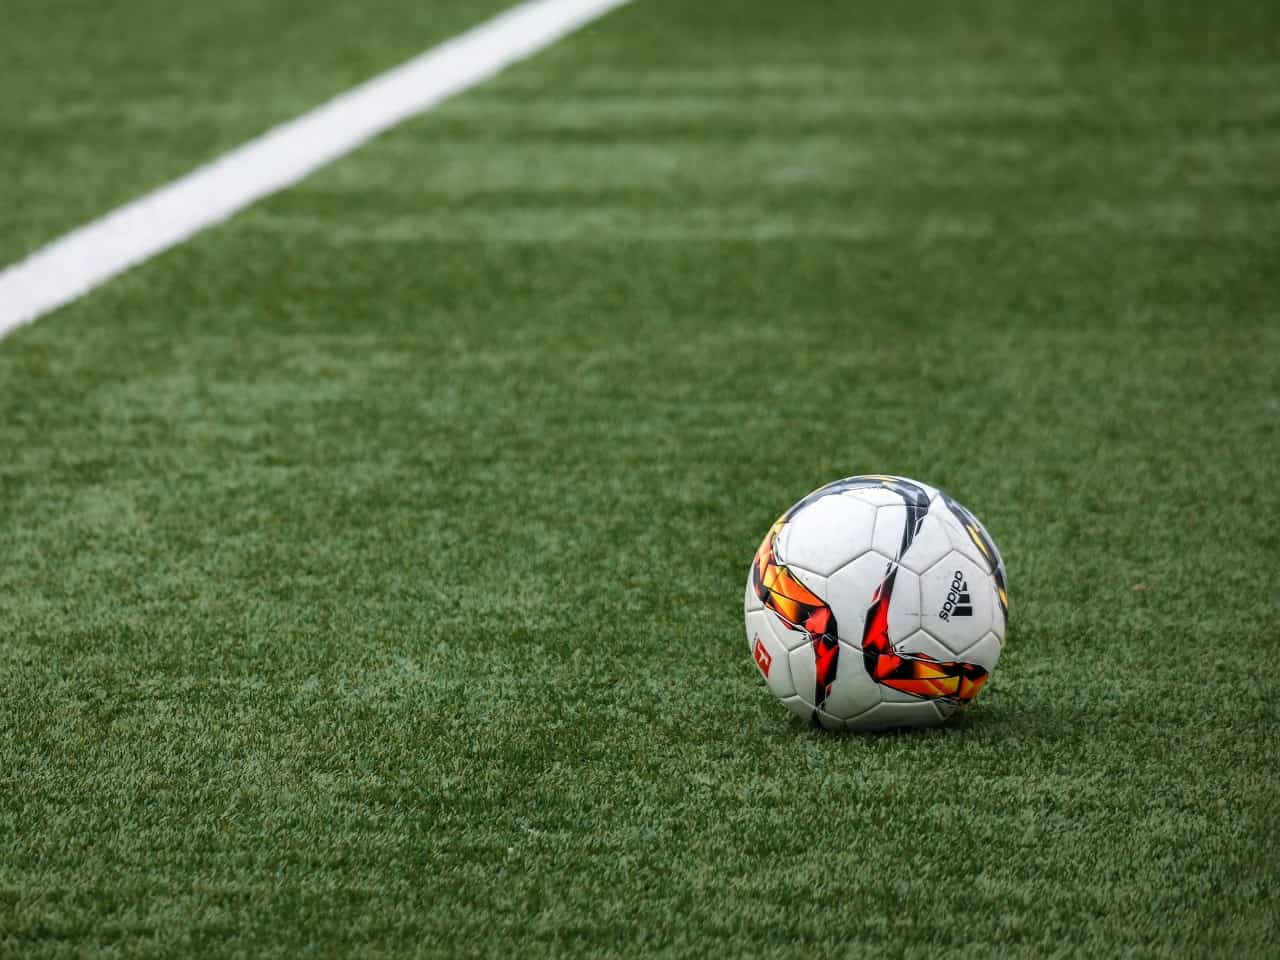 Assistir Futebol ao Vivo no Celular: Veja Aplicativo Grátis